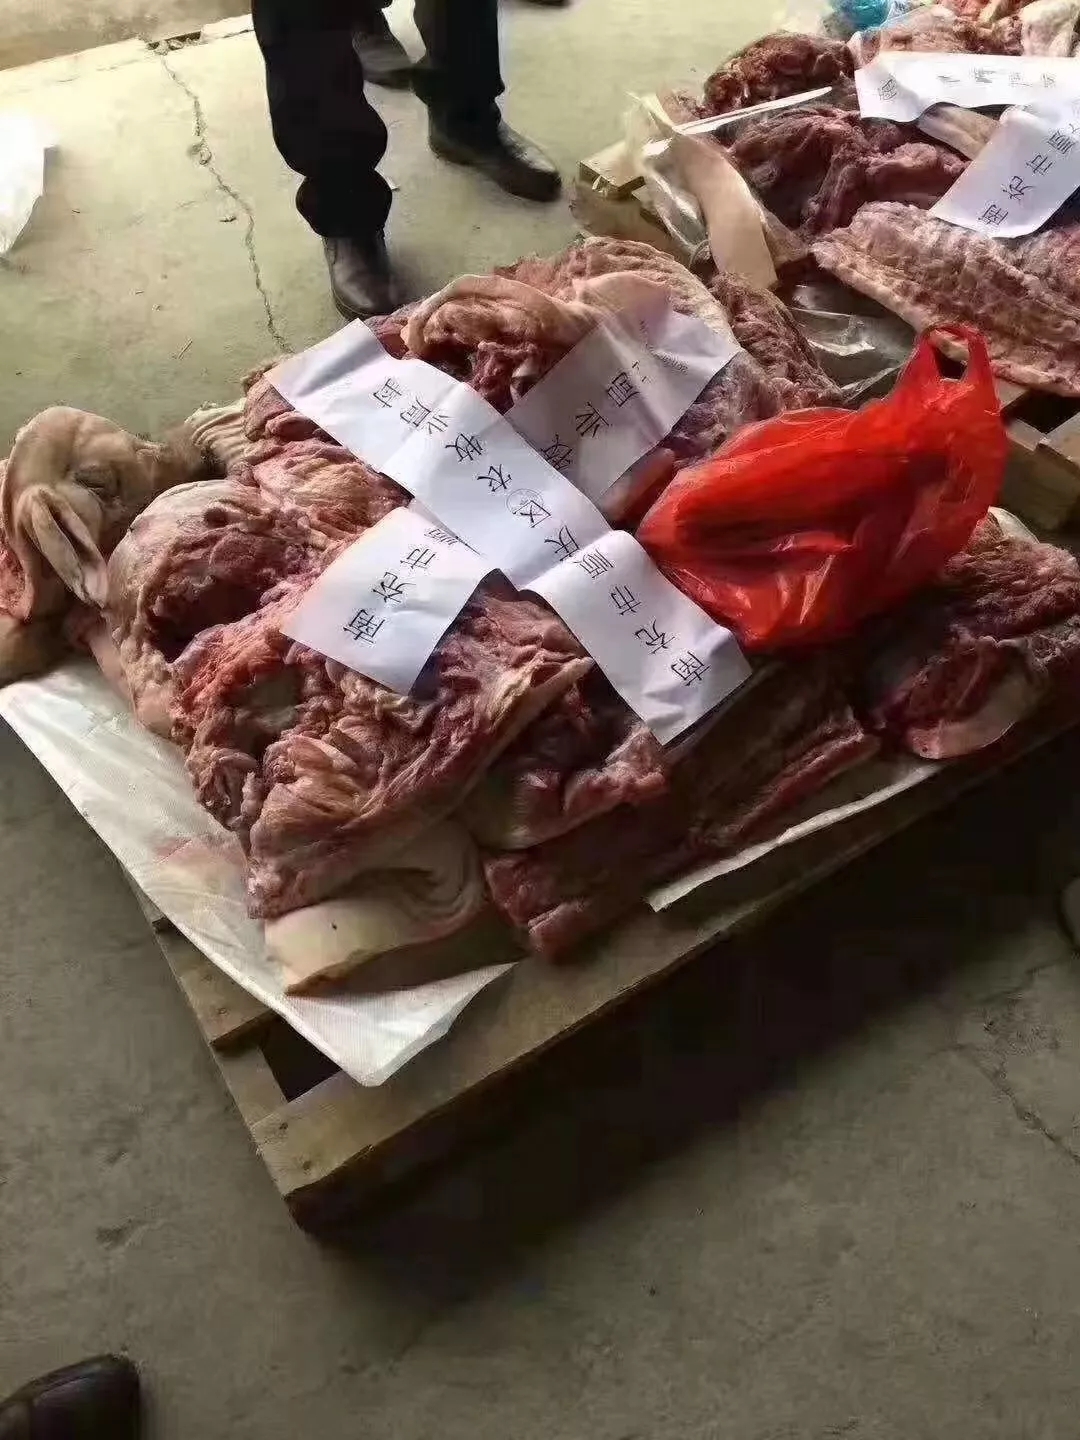 顺庆区发现"非洲猪瘟肉被查封"?最新官方回复来了